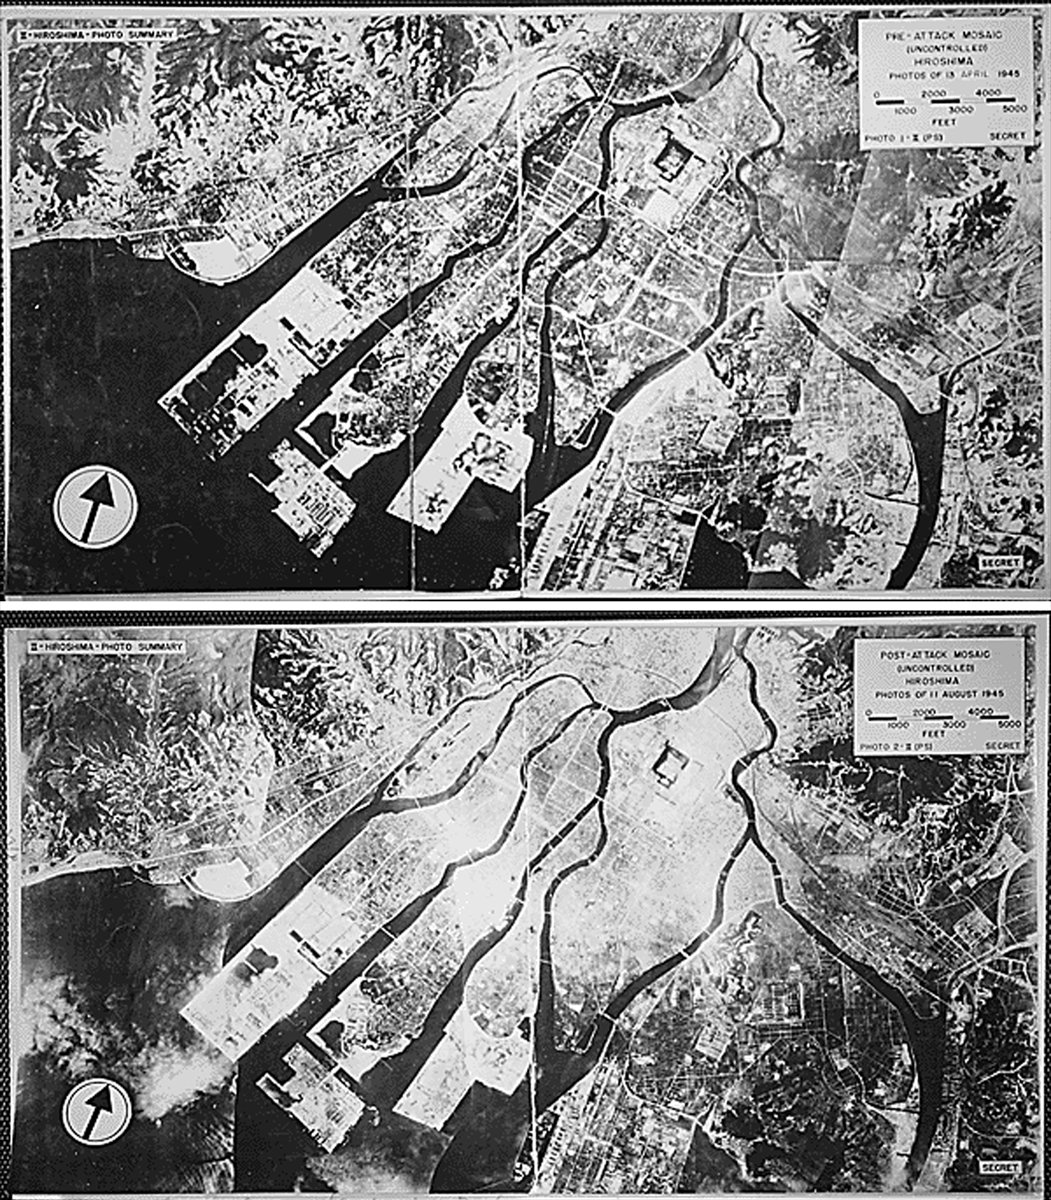 ABD nin Hiroşima ya atom bombalı saldırısının üzerinden 77 yıl geçti #6